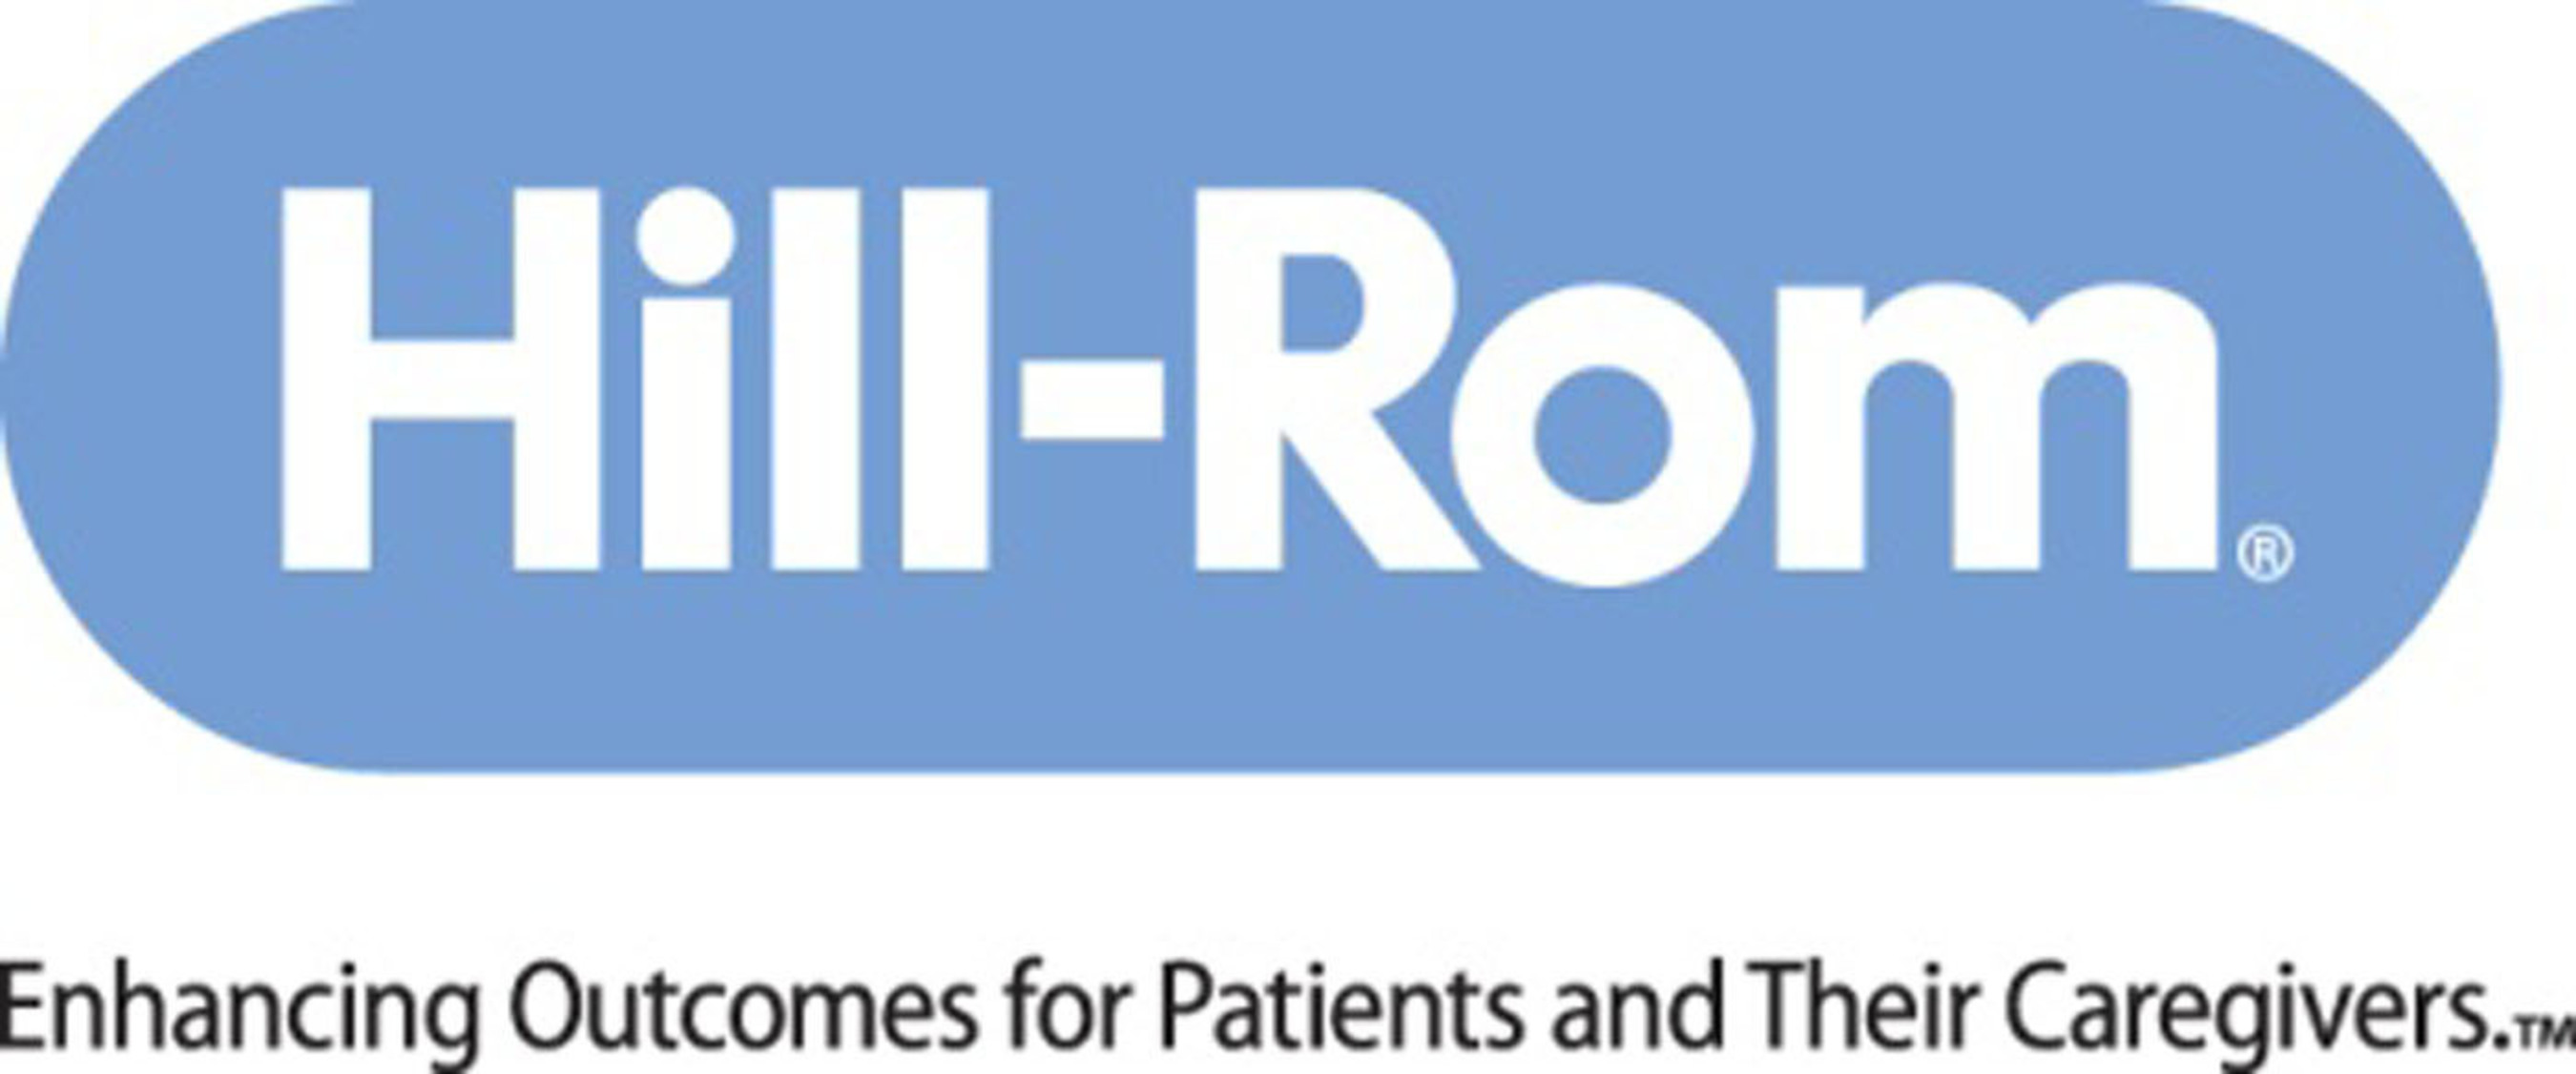 Hill-Rom Logo. (PRNewsFoto/Hill-Rom Holdings, Inc.)